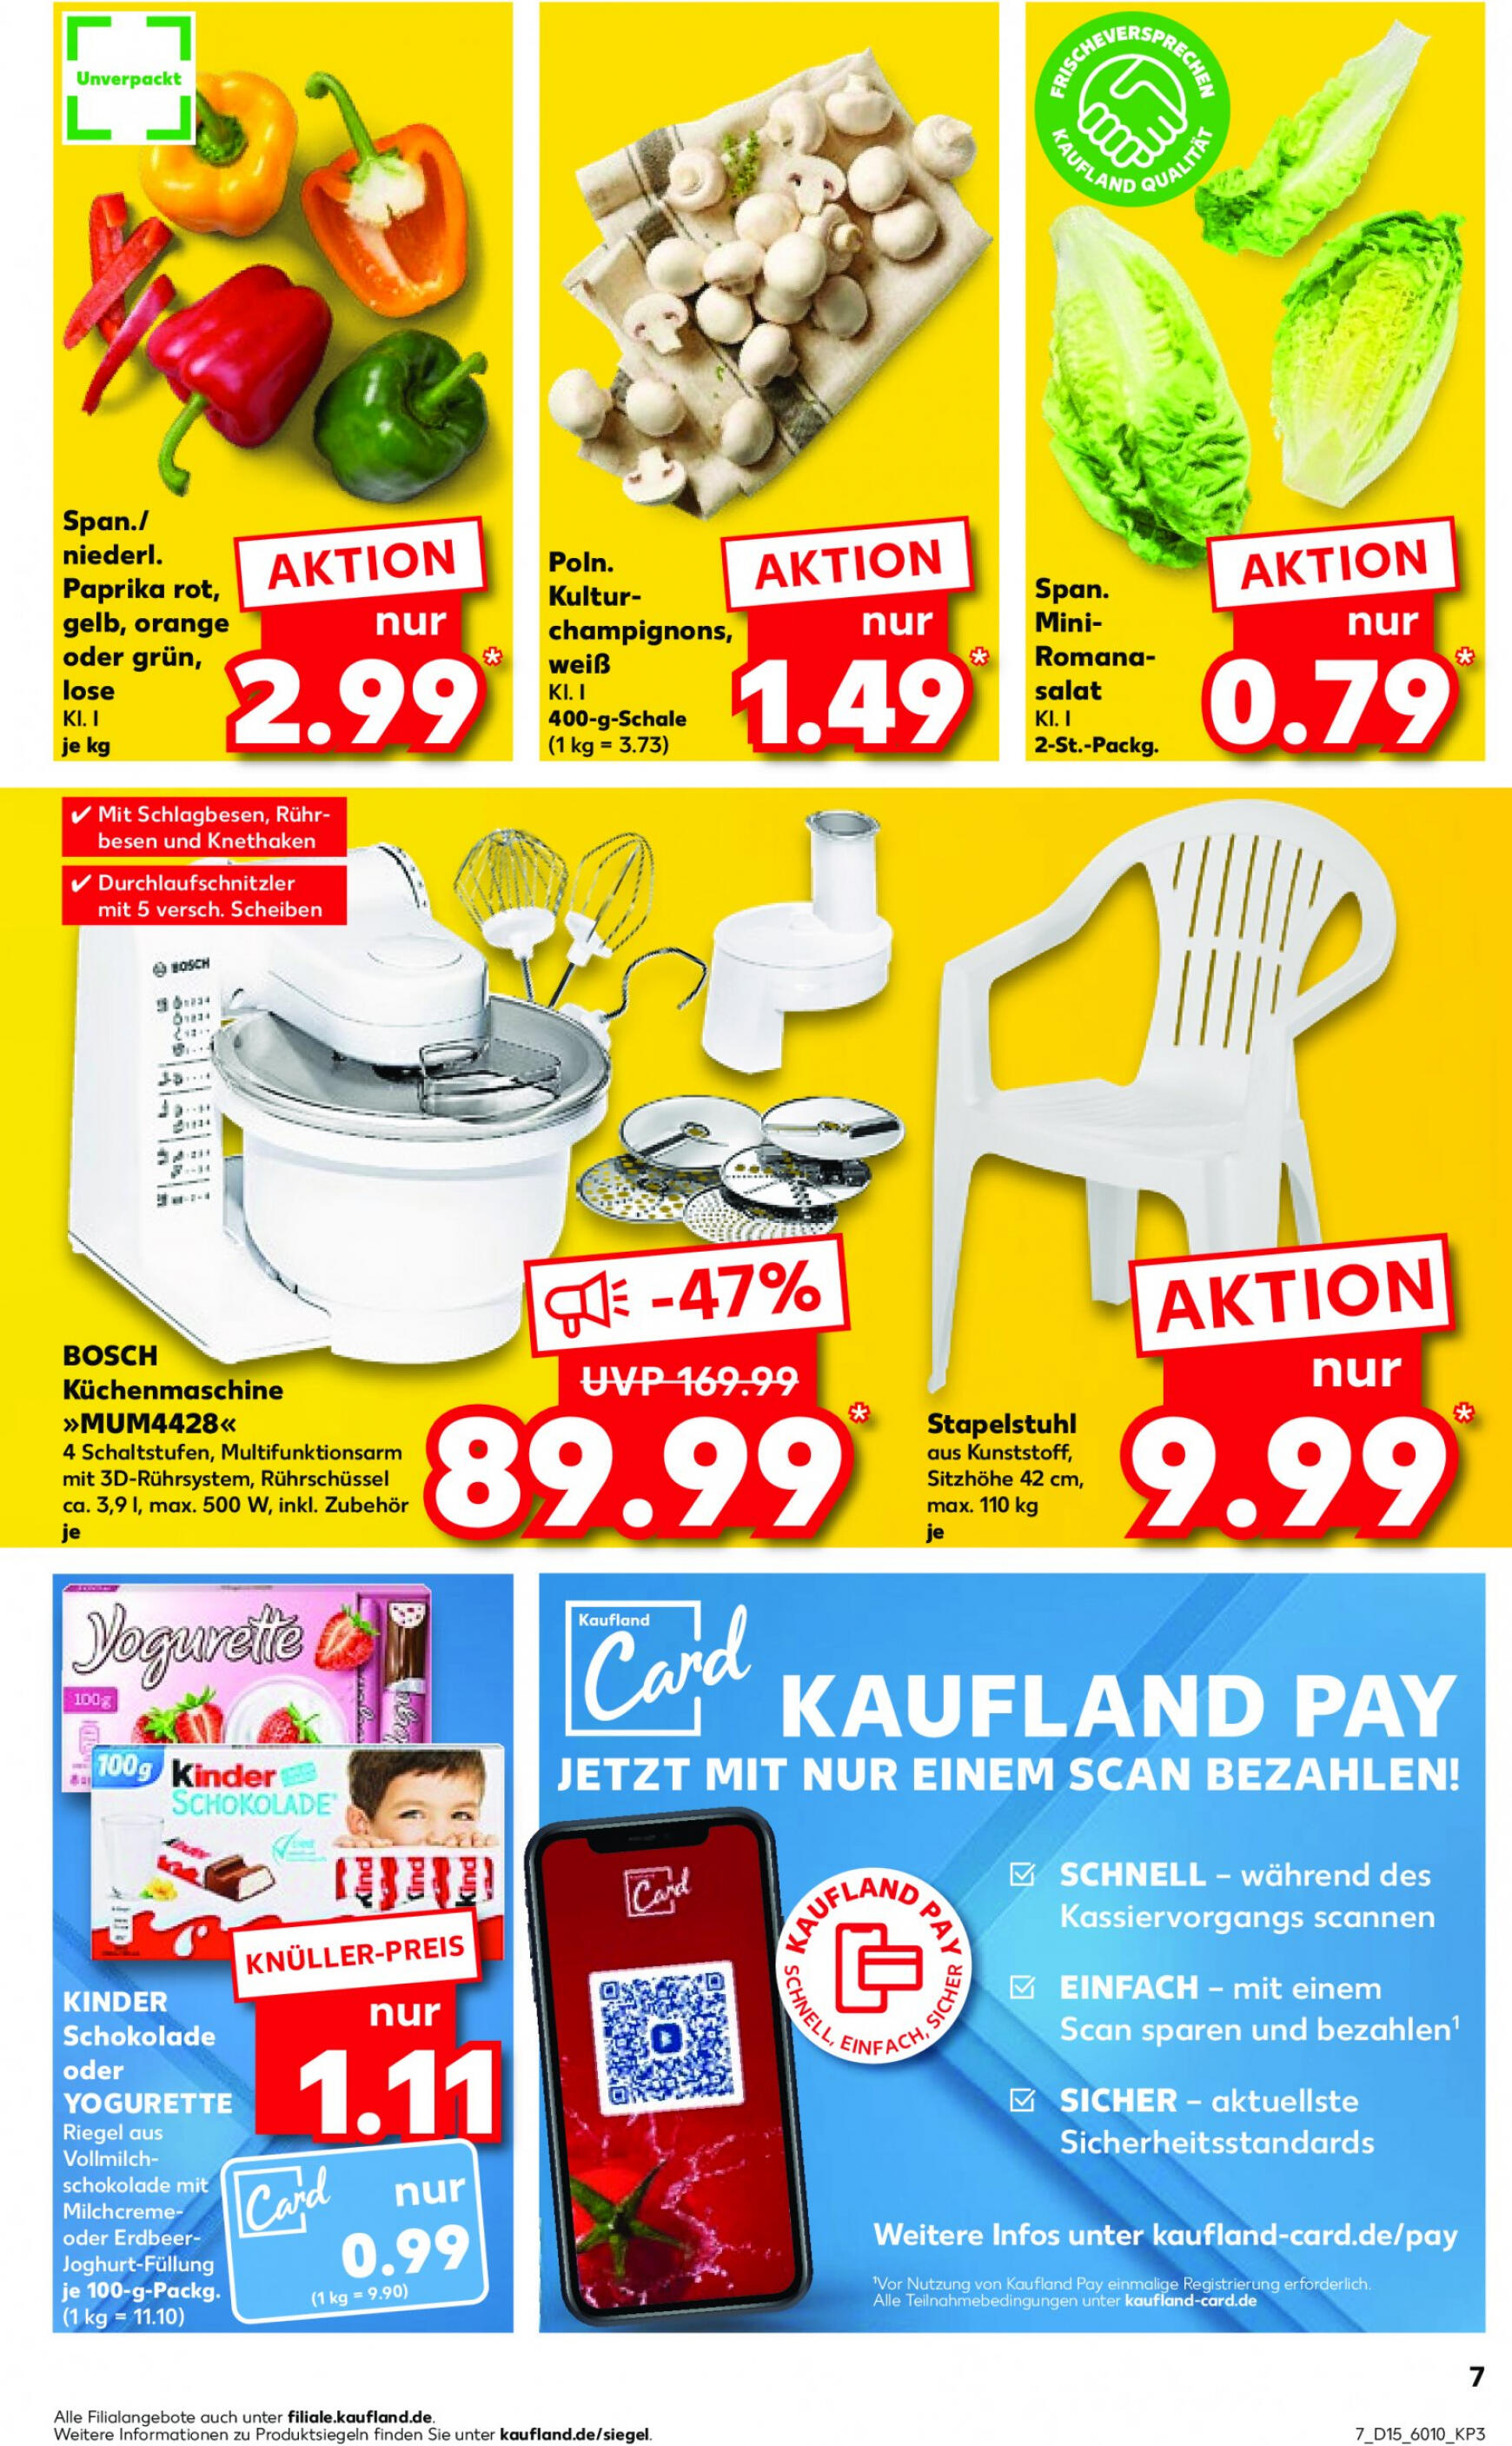 kaufland - Flyer Kaufland aktuell 11.04. - 17.04. - page: 7